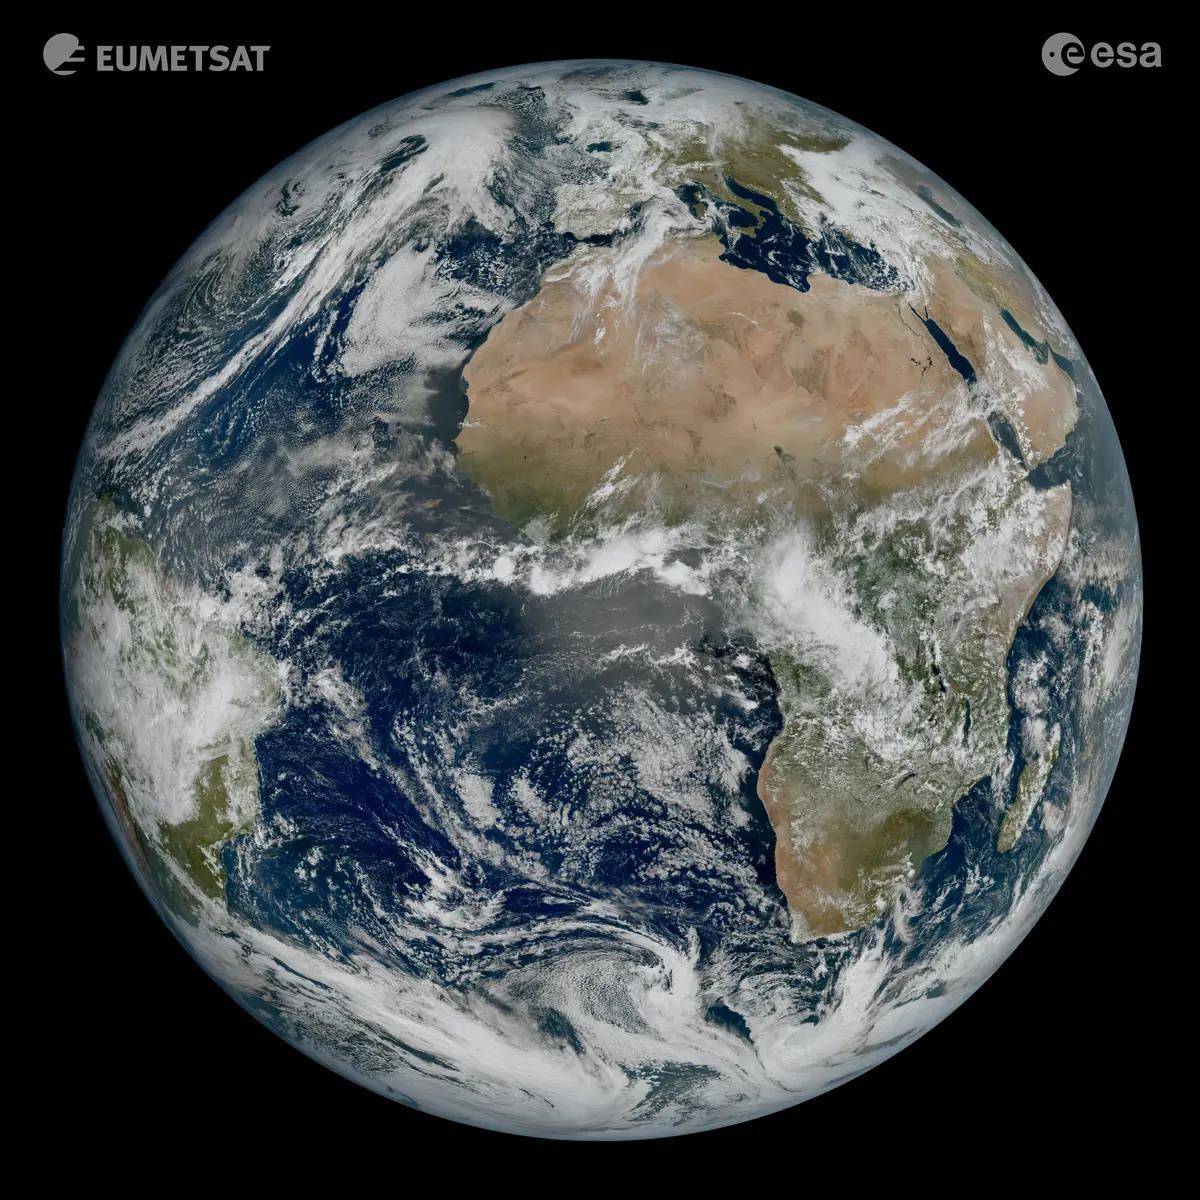 欧空局气象监测卫星MTG-I1传回首张“地球自拍照” 分辨率为12000*12000